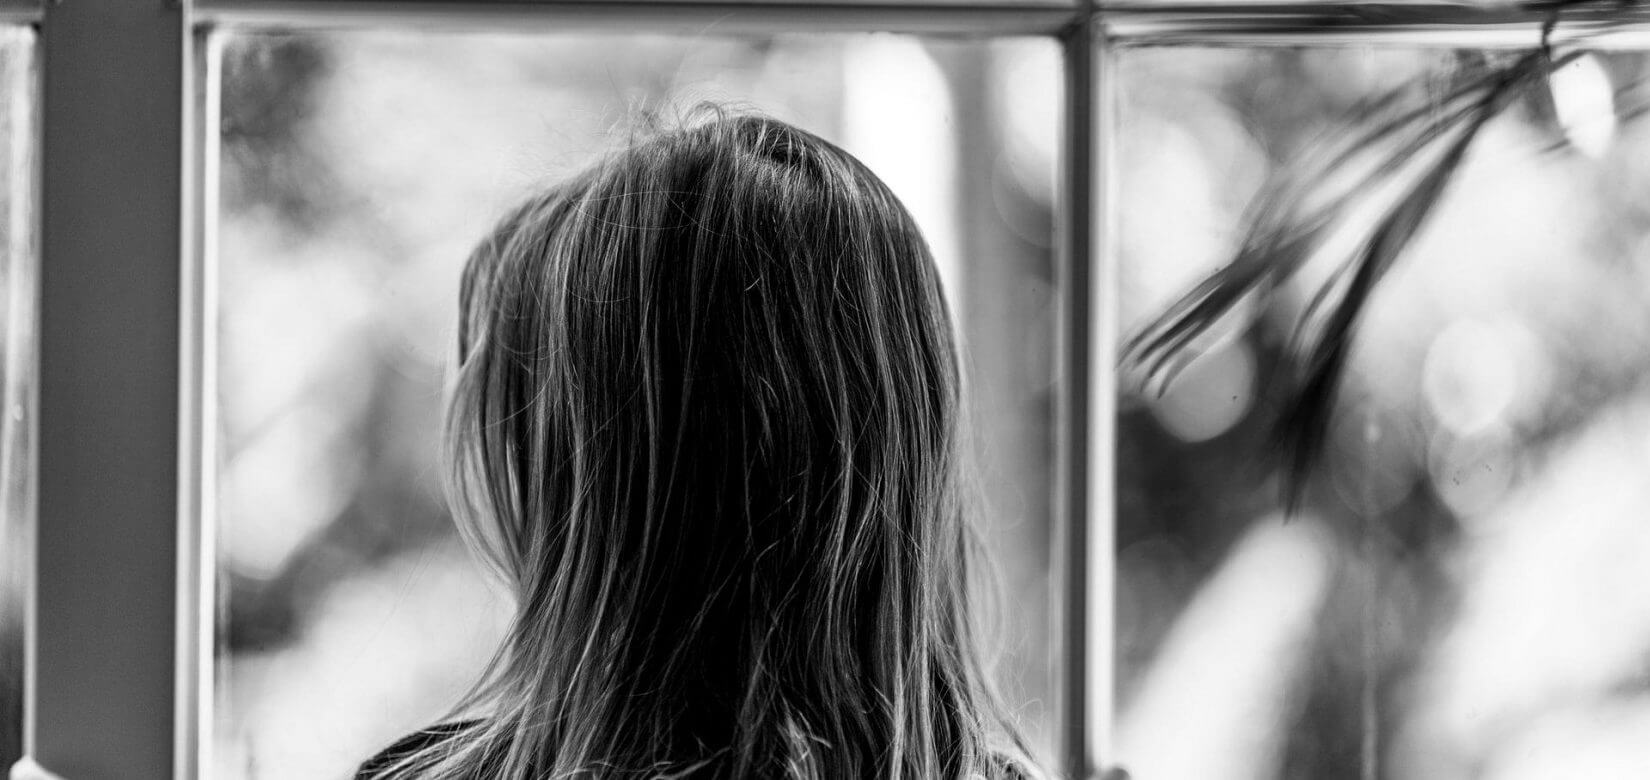 Αυτοκτονικές τάσεις & διατροφικές διαταραχές: Οι δραματικές επιπτώσεις στην υγεία των παιδιών από την πανδημία